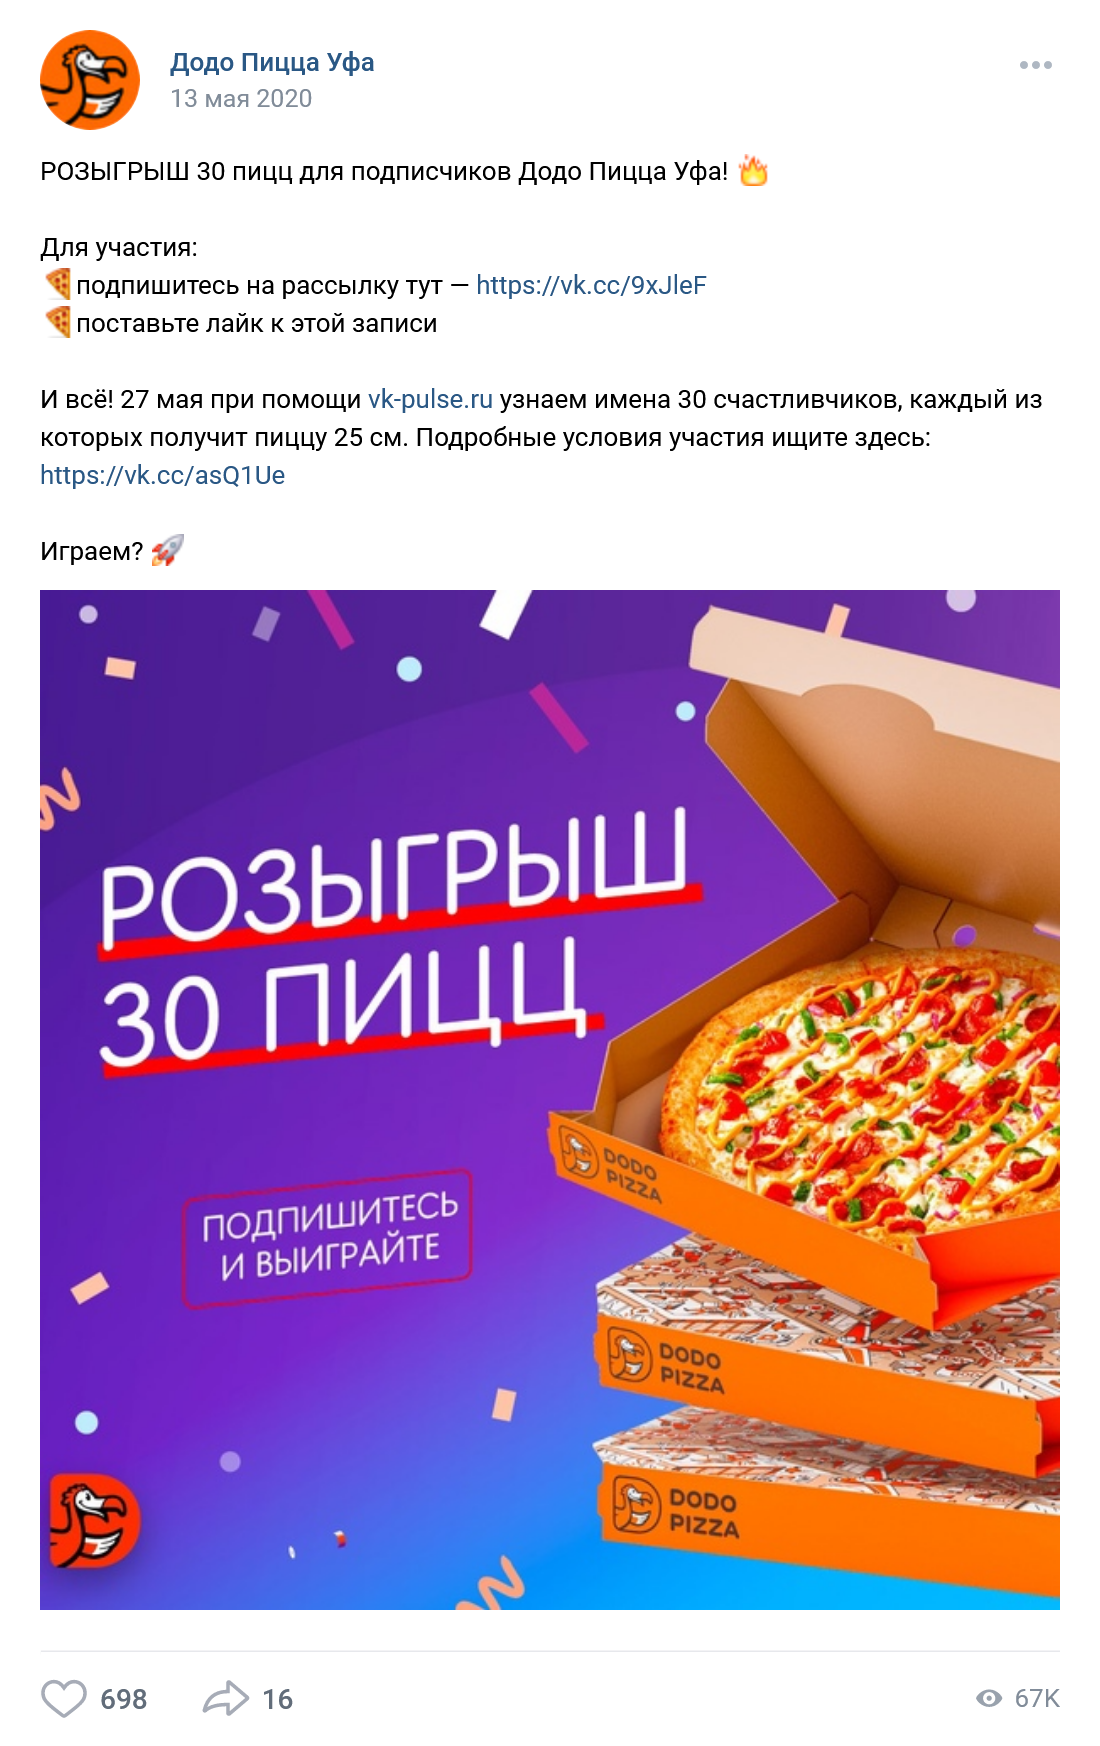 Розыгрыш пиццы во «Вконтакте». Для участия в конкурсе нужно подписаться на рассылку и поставить лайк